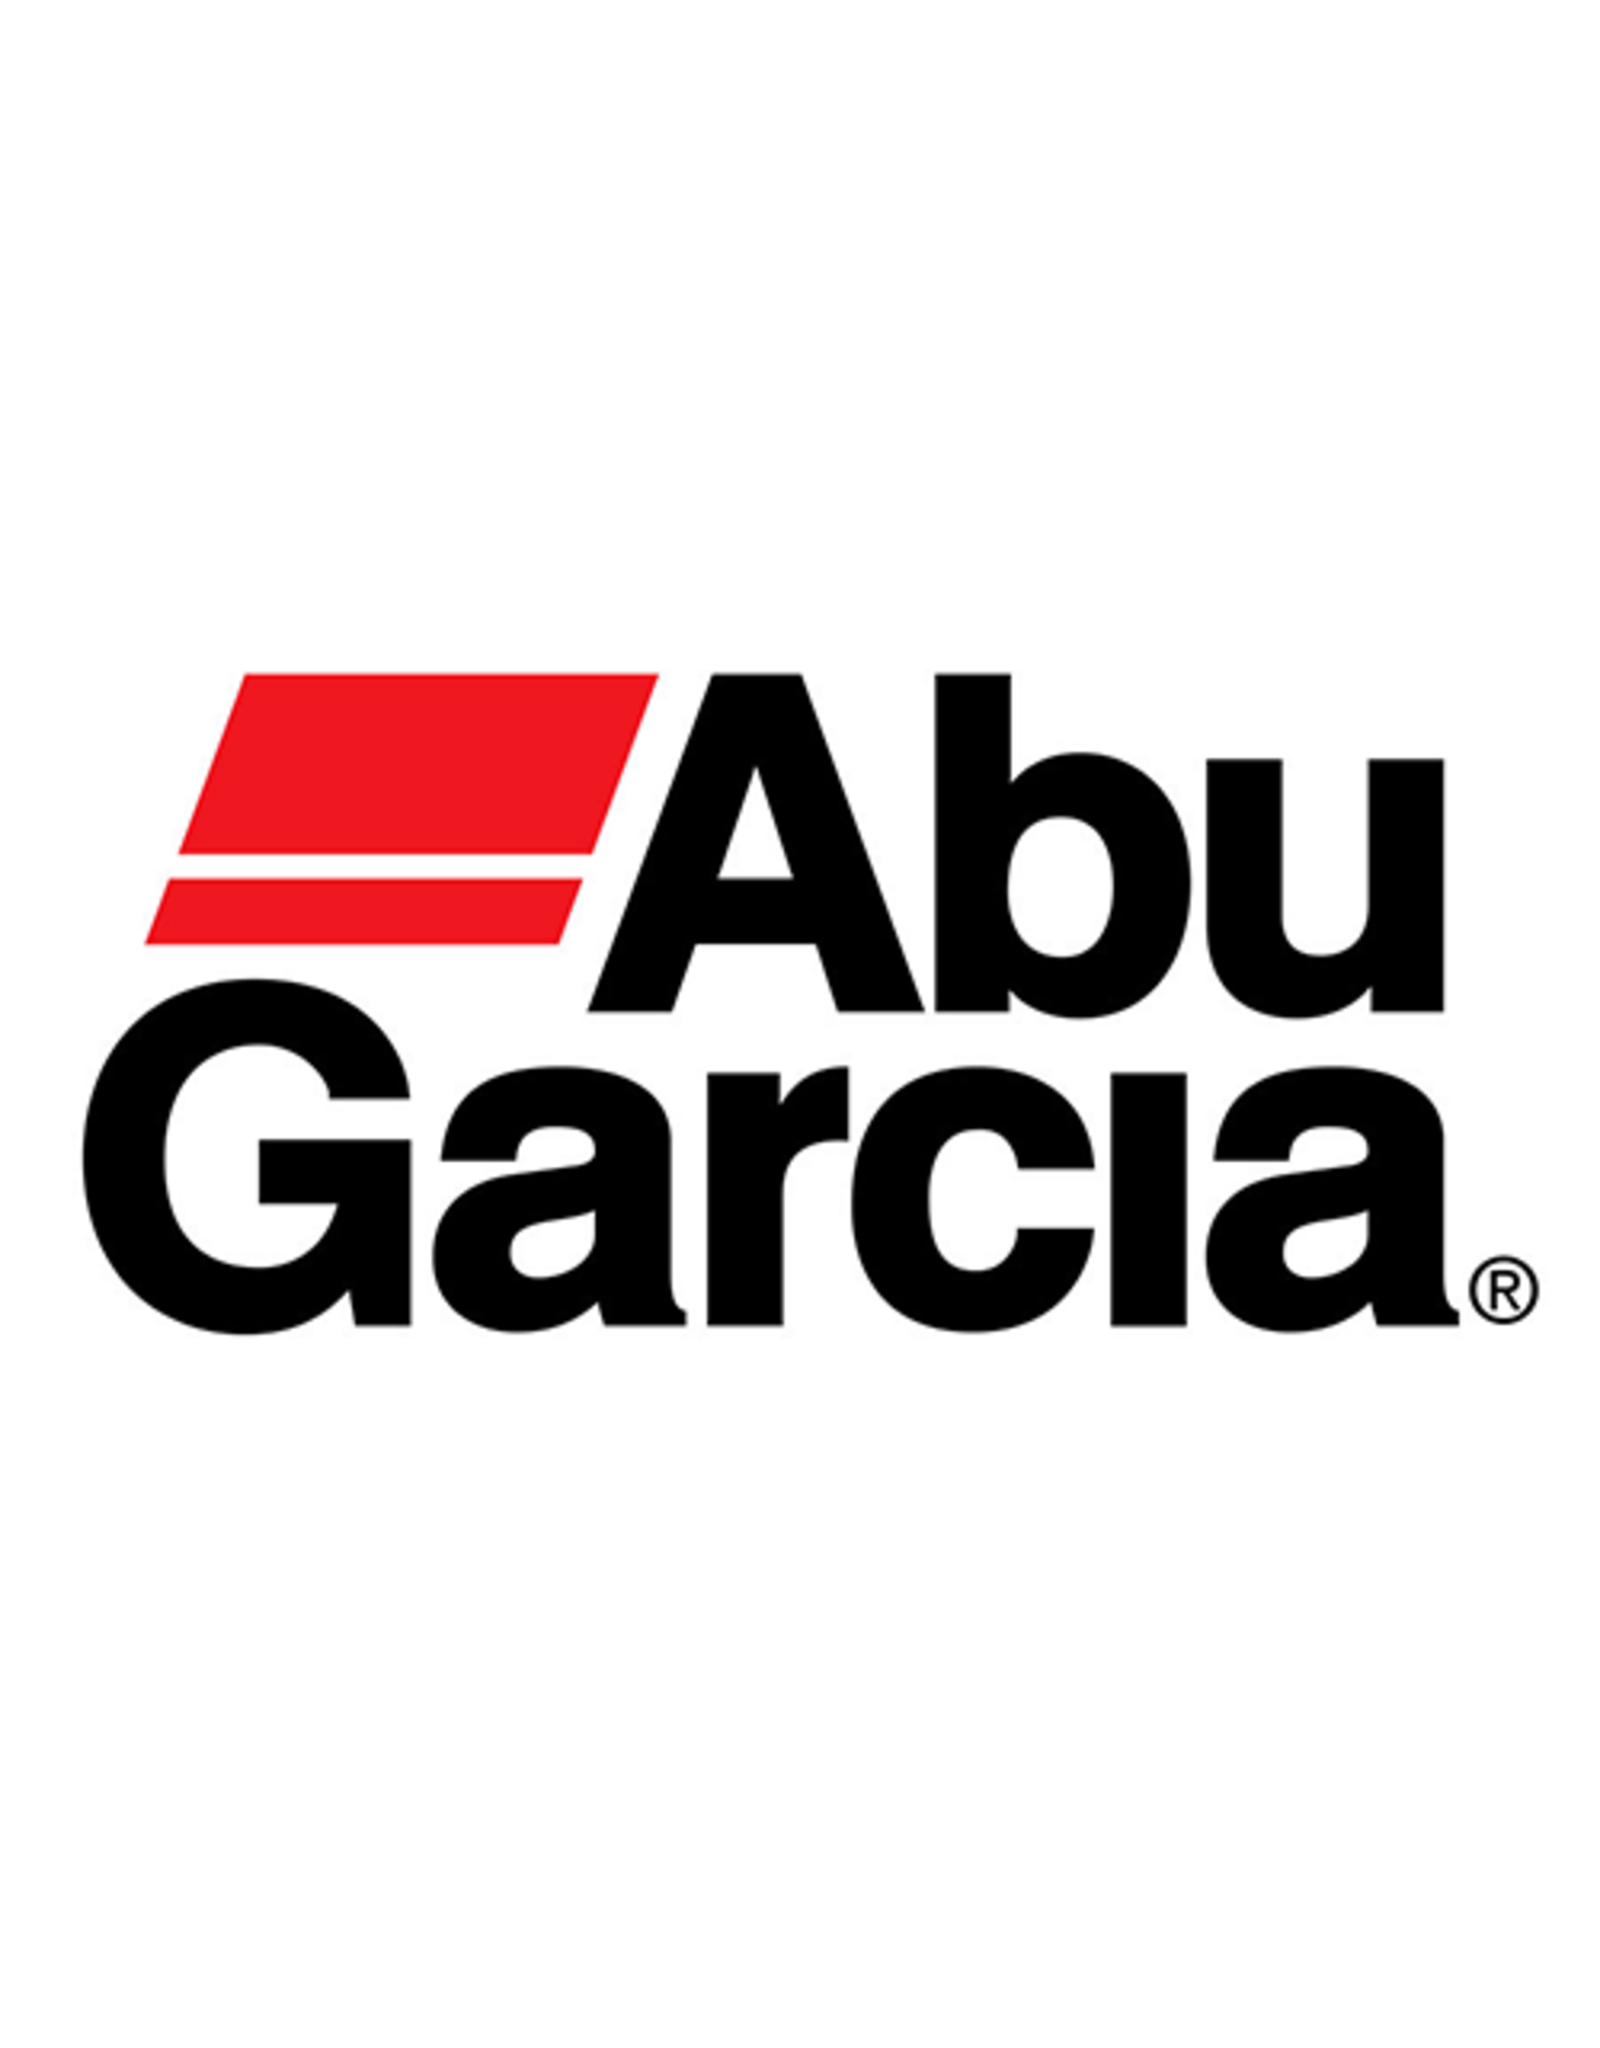 Abu Garcia 975301  WORM GEAR COV./ NLA/ SUB 2498